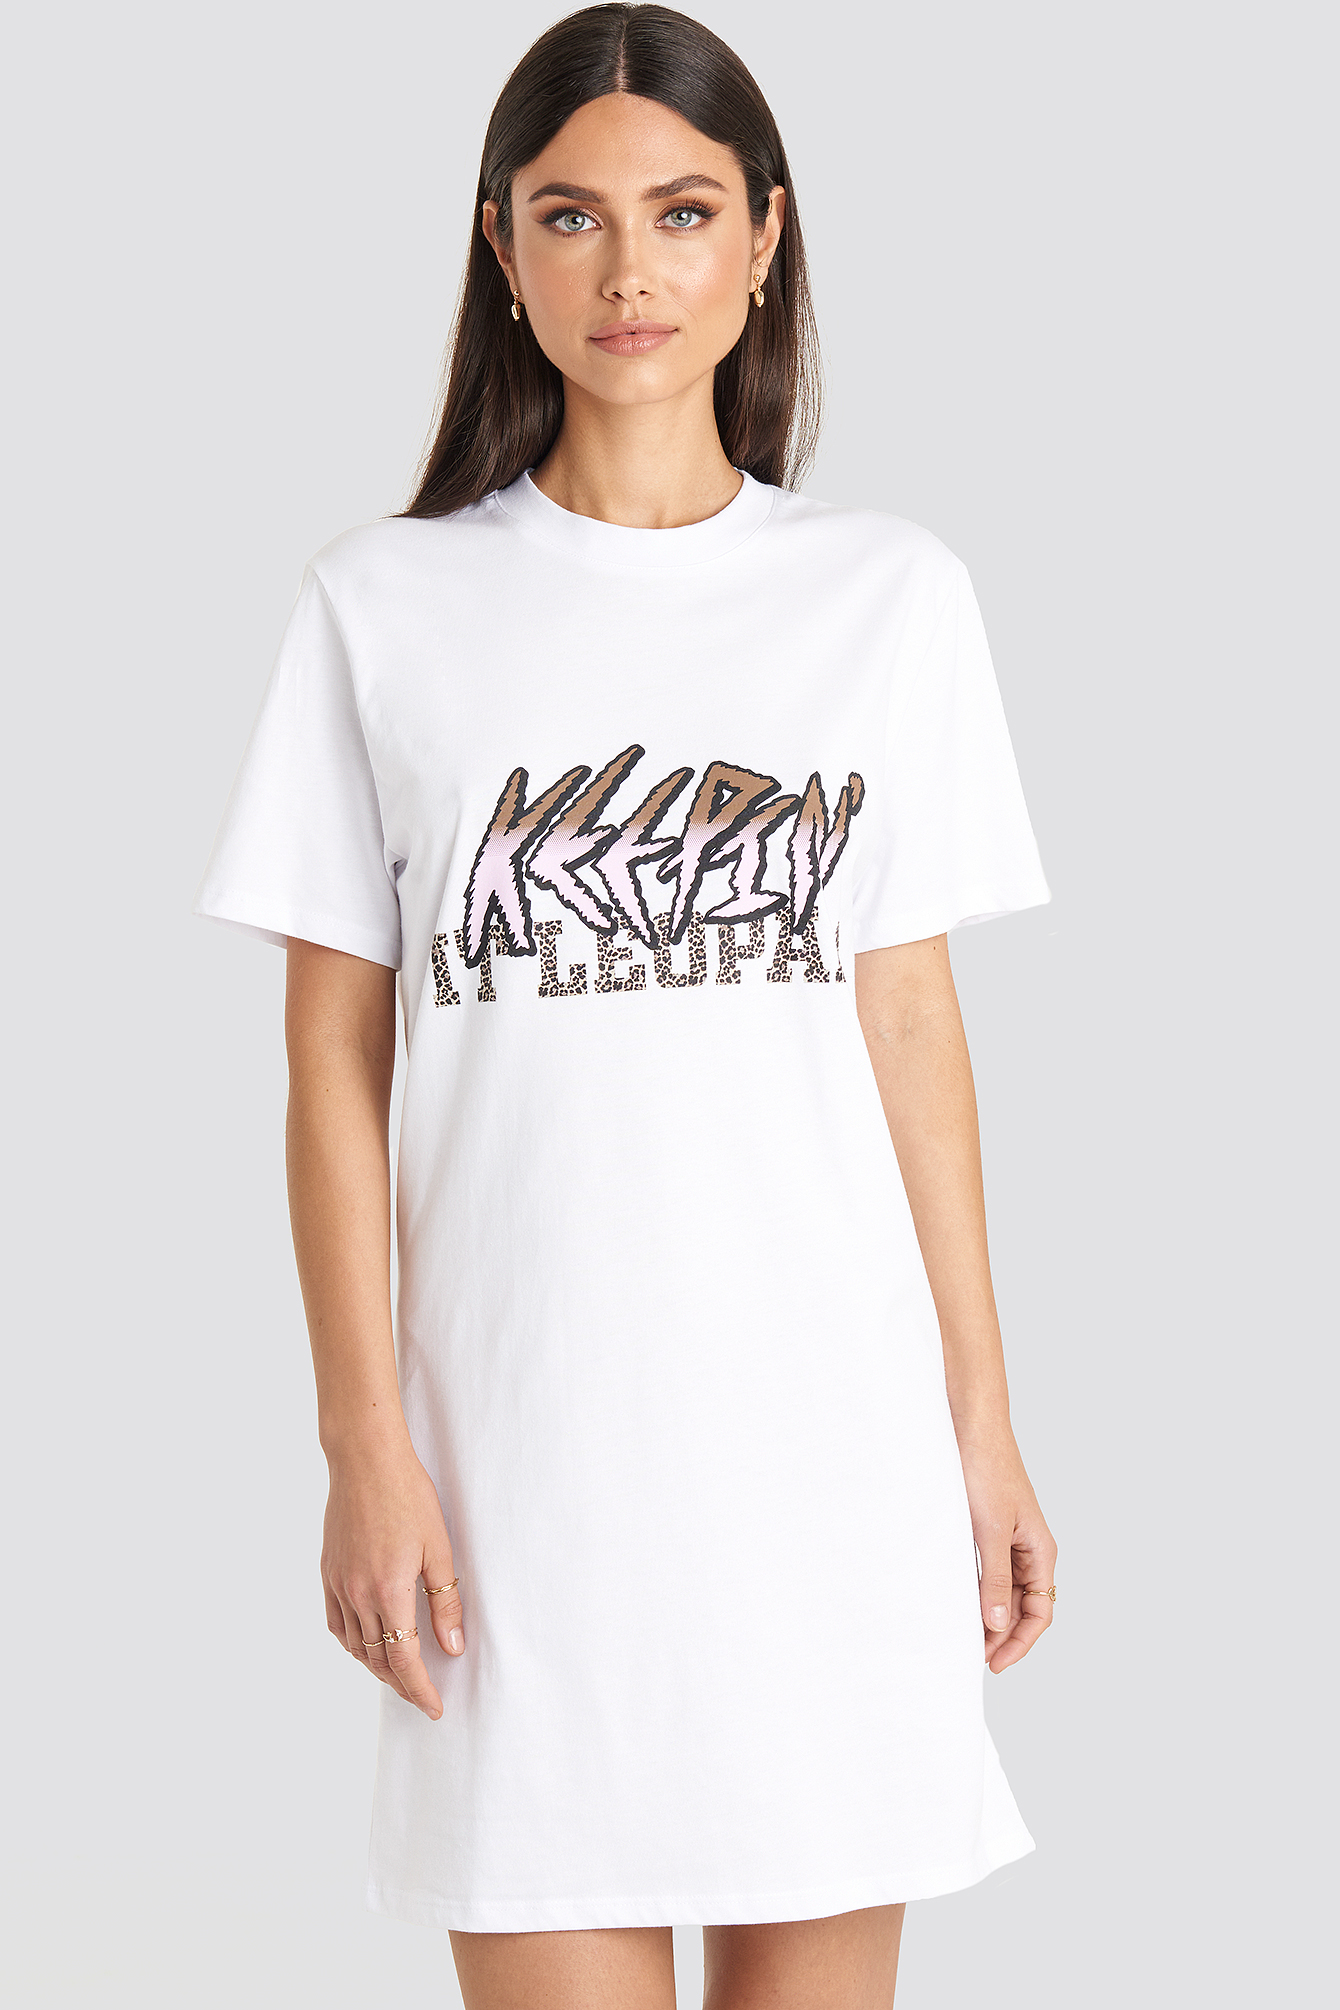 Mode Jurken T-shirt jurken Vila Clothes T-shirt jurk volledige print casual uitstraling 